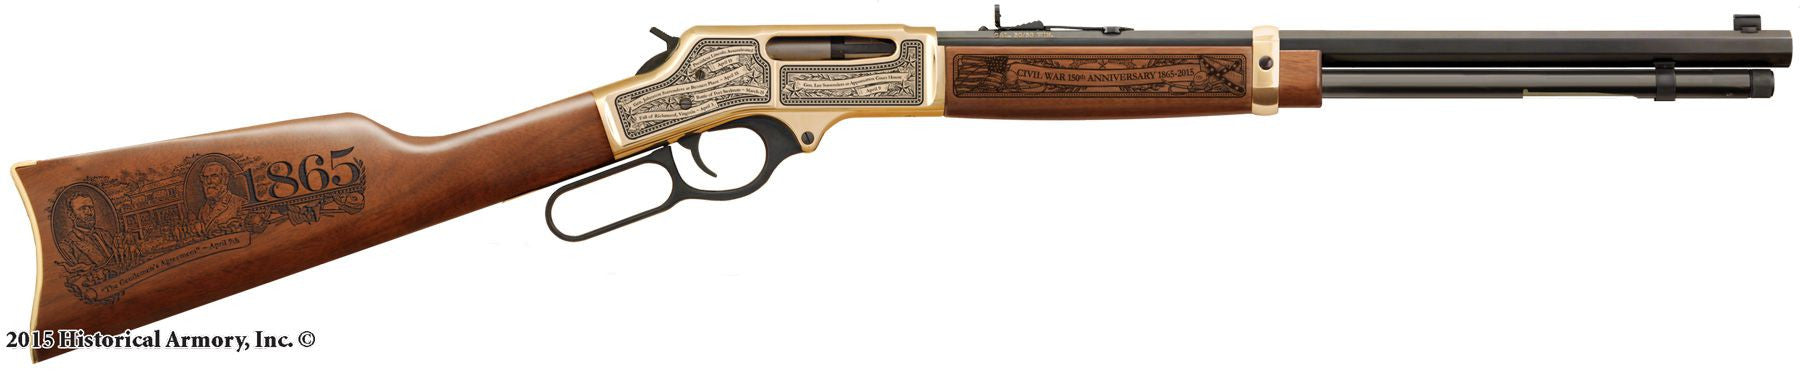 civil war 150th 1865 engraved rifle h009b